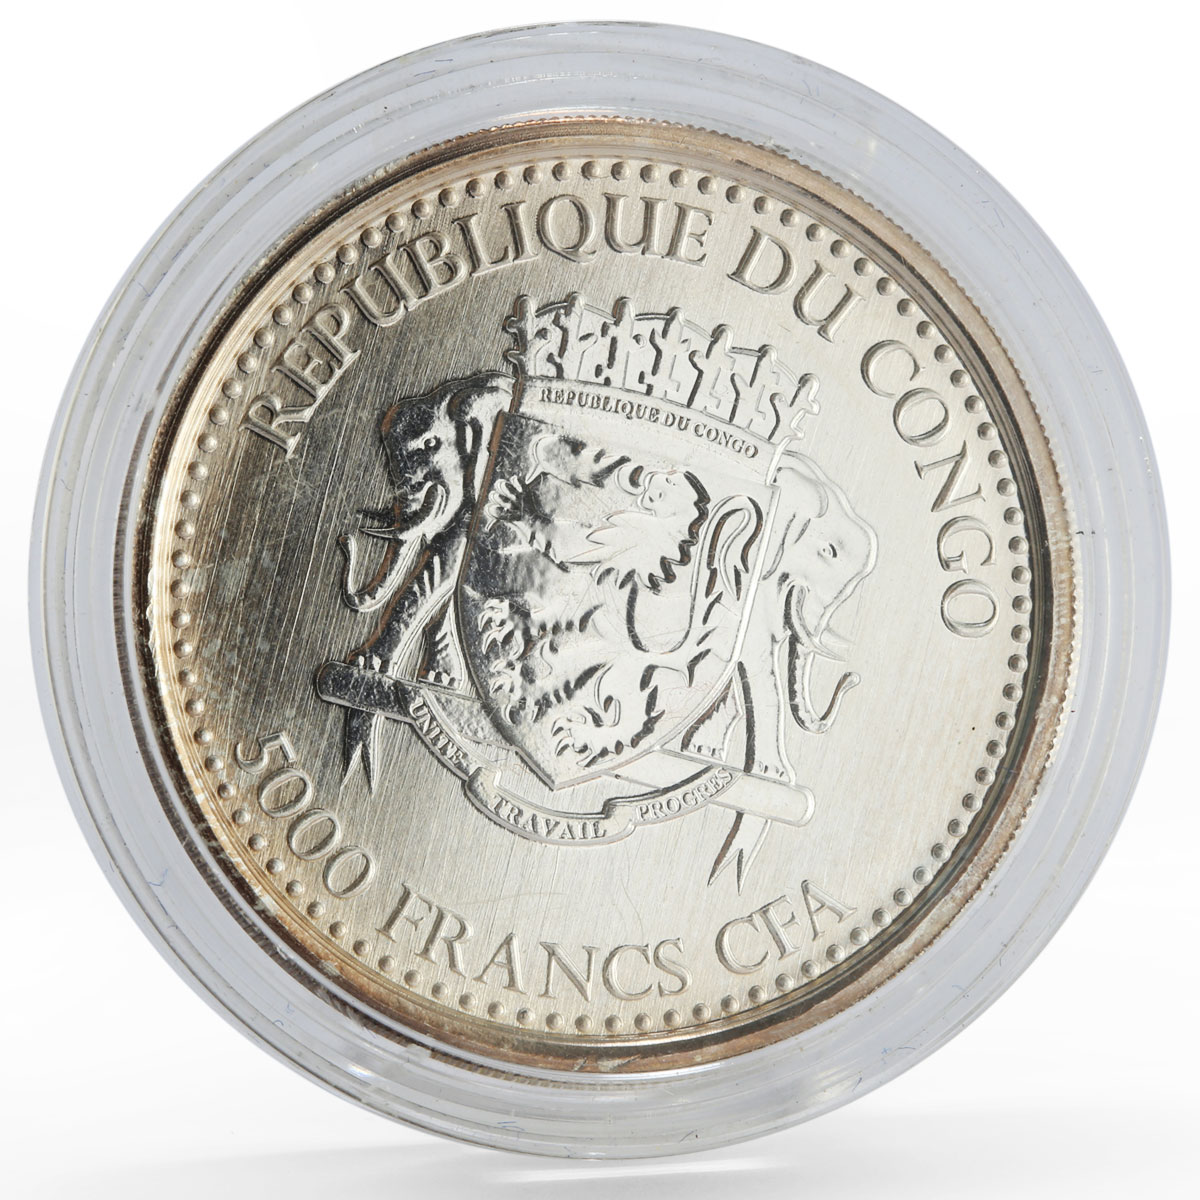 Congo 5000 francs African Wildlife Silverback Gorilla silver coin 2017